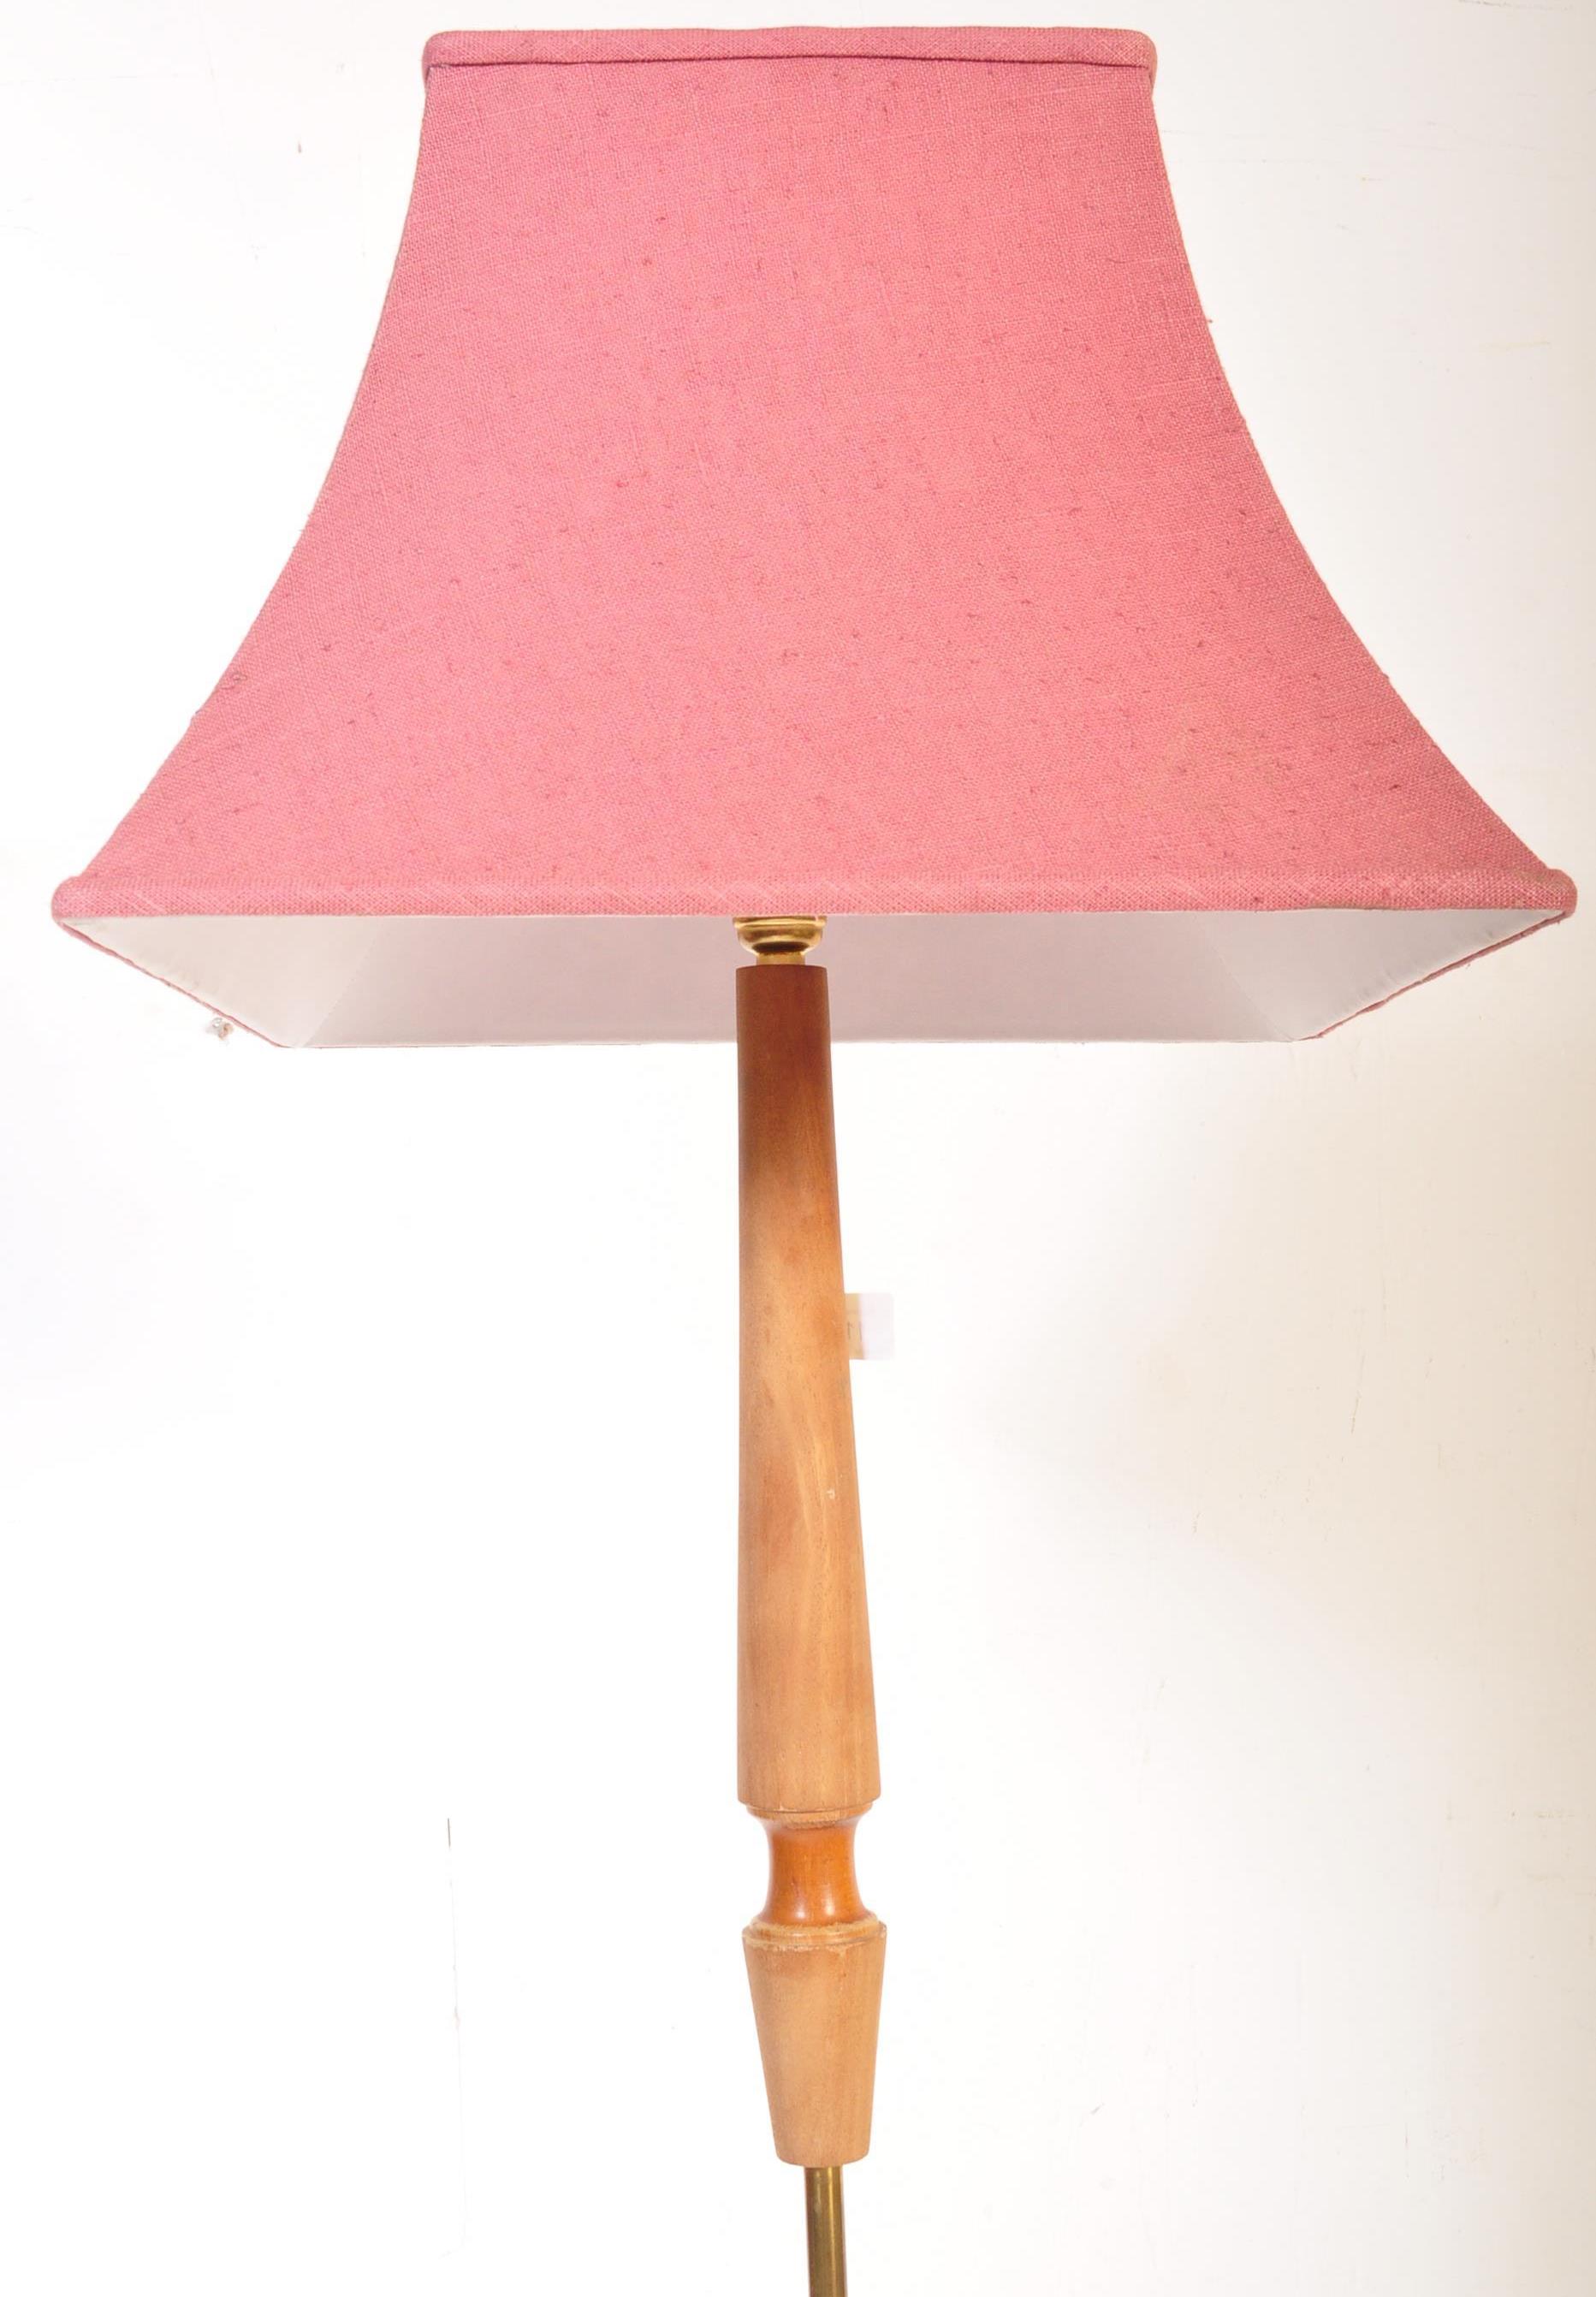 RETRO MID 20TH CENTURY TEAK WOOD FLOOR STANDARD LAMP - Image 4 of 4